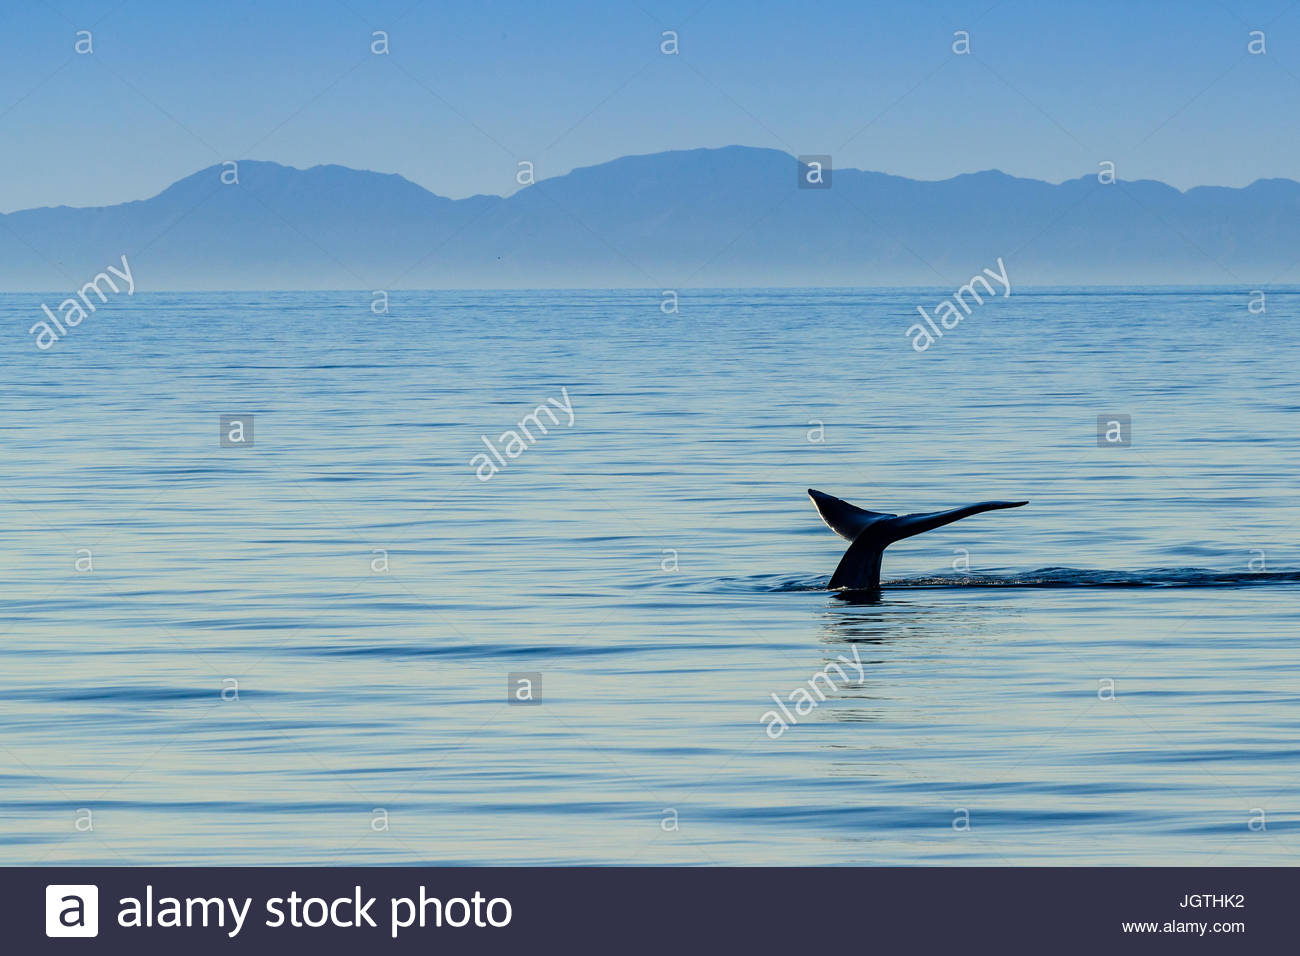 Il più grande del mondo animale, una balena blu solleva la sua fluke fuori dall'acqua. Foto Stock